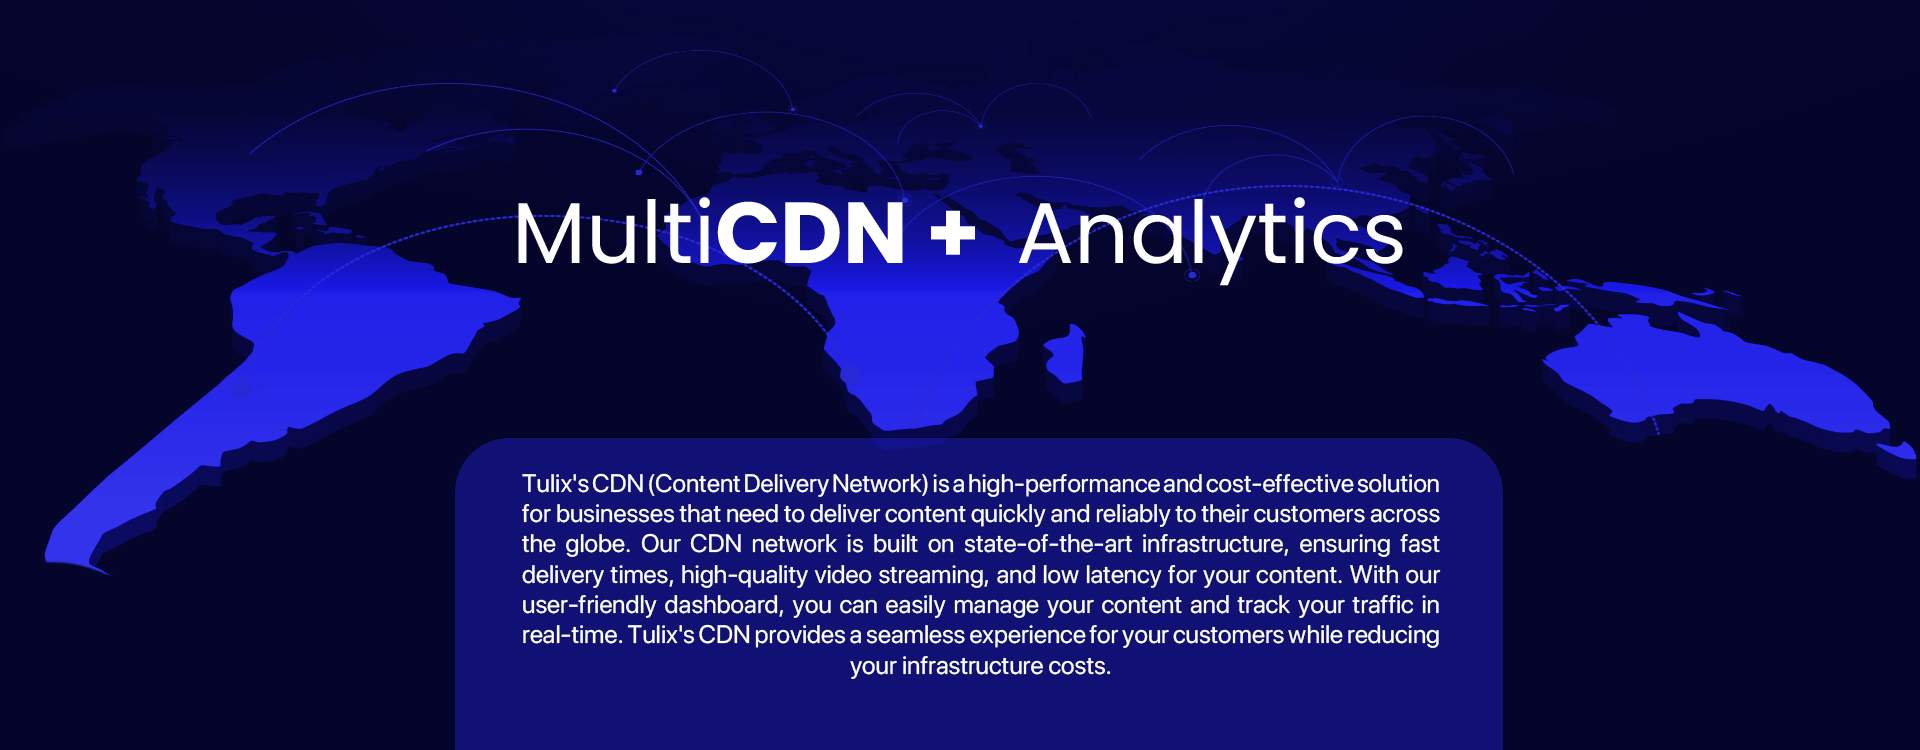 CDN + Analytics